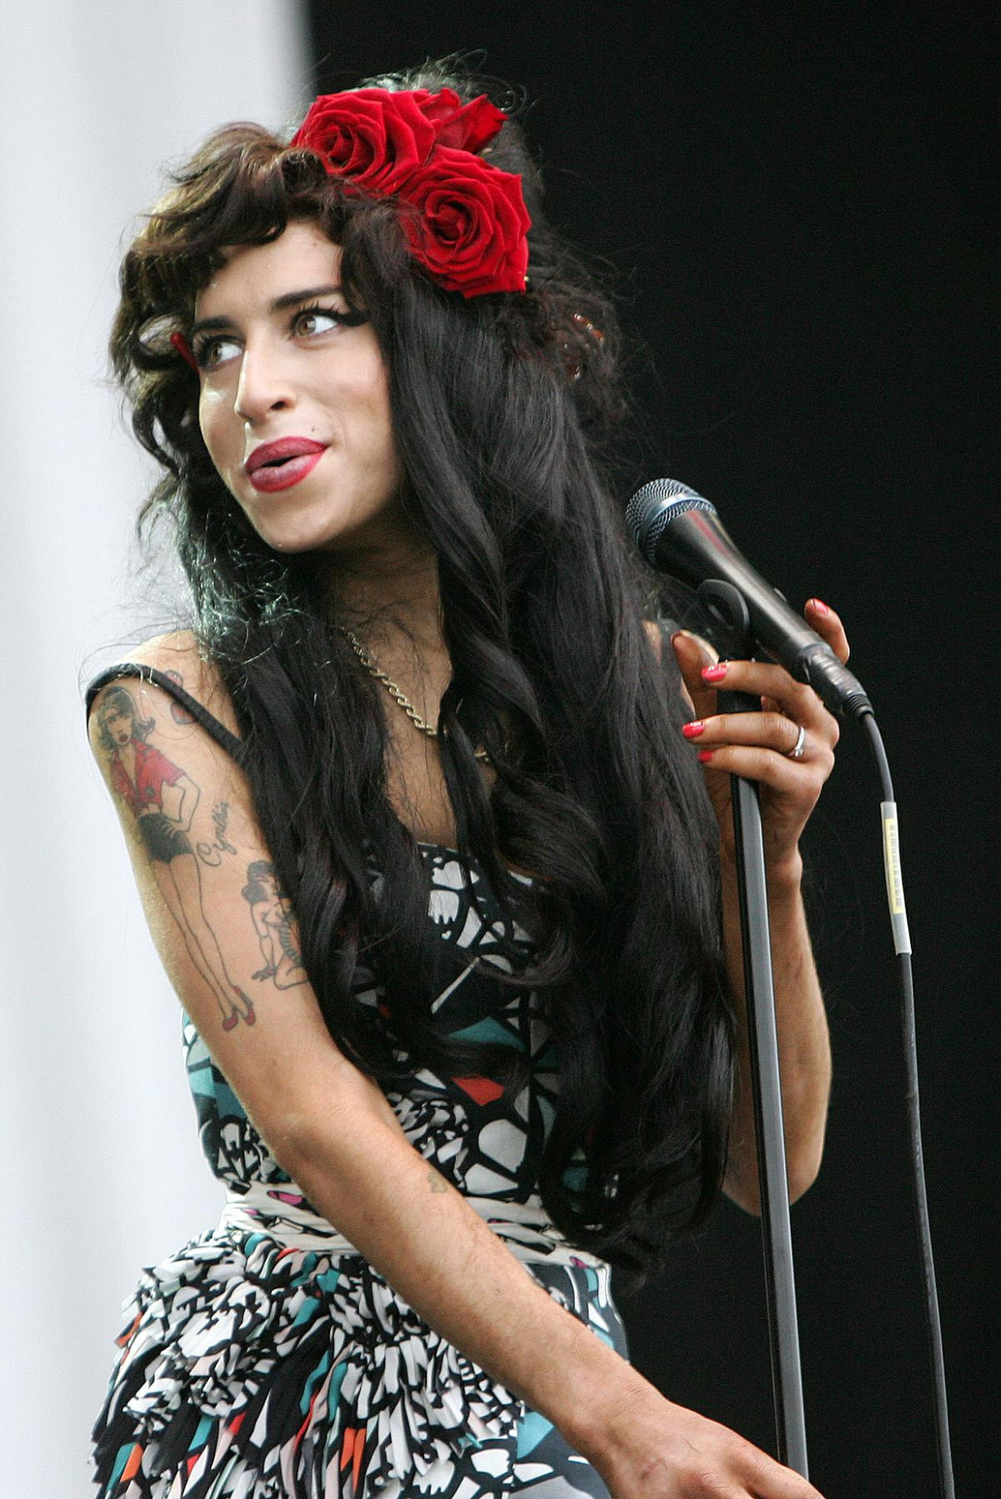 Amy Winehouse zemřela na otravu alkoholem 23. července 2011 v pouhých 27 letech. Za svůj krátký život tato talentovaná zpěvačka vyhrála celkem pět cen Grammy. O její lásce k hudbě a boji s drogami byl v roce 2015 natočen oscarový dokument Amy.